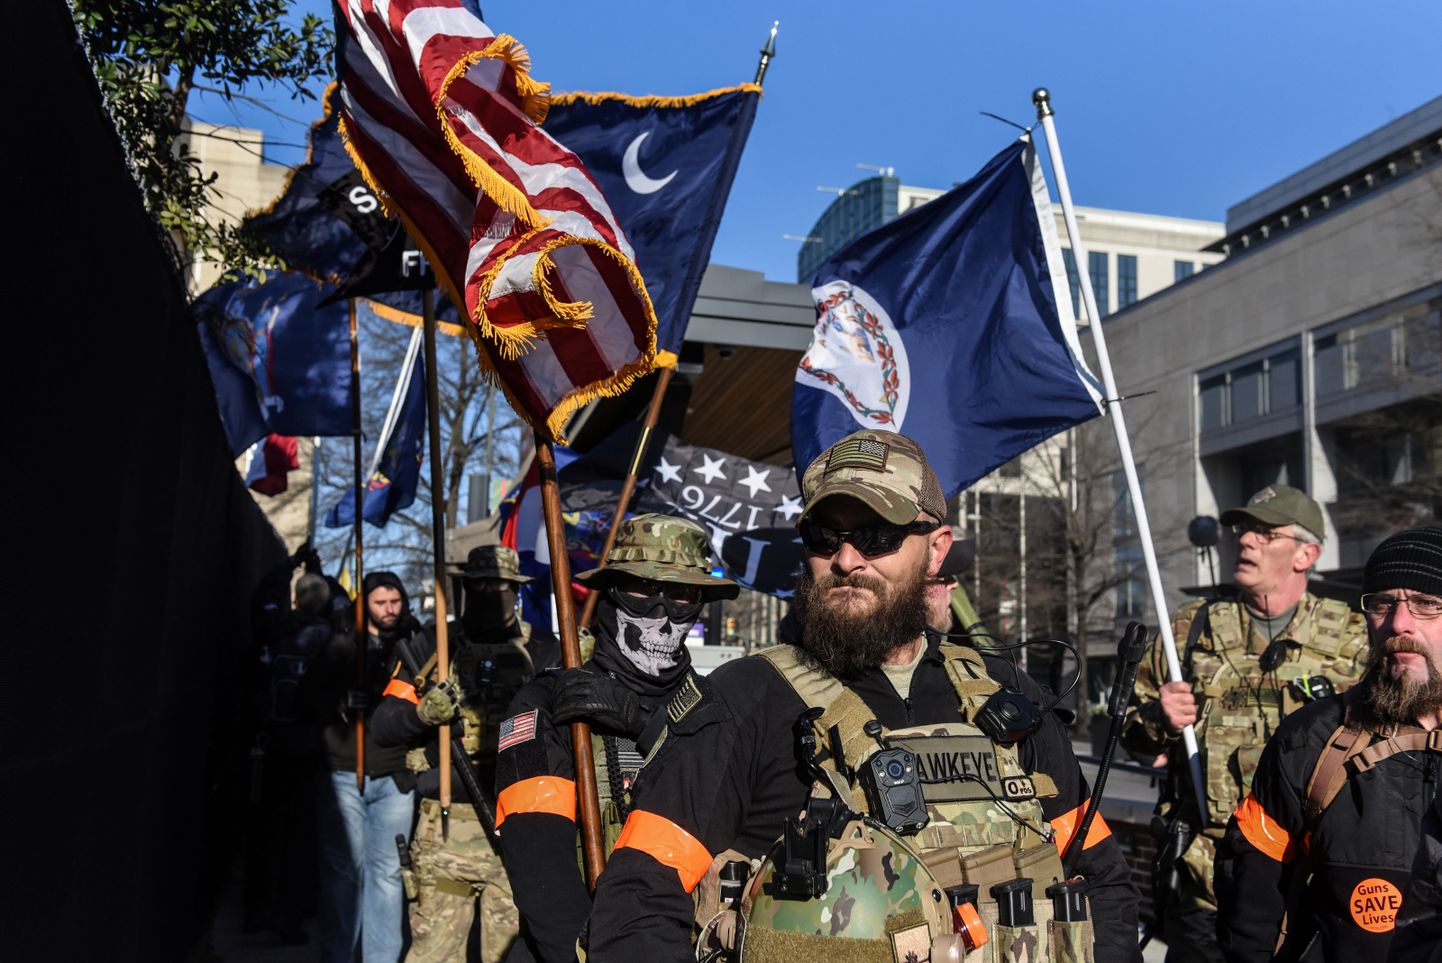 Relvastatud omakaitseüksuslased Virginia osariigis Richmondis esmaspäeval toimunud relvaentusiastide marsil. Neonatsirühmituse Base liikmed plaanisid meeleavaldusel tulistada rahva sekka, et algatada rassisõda.